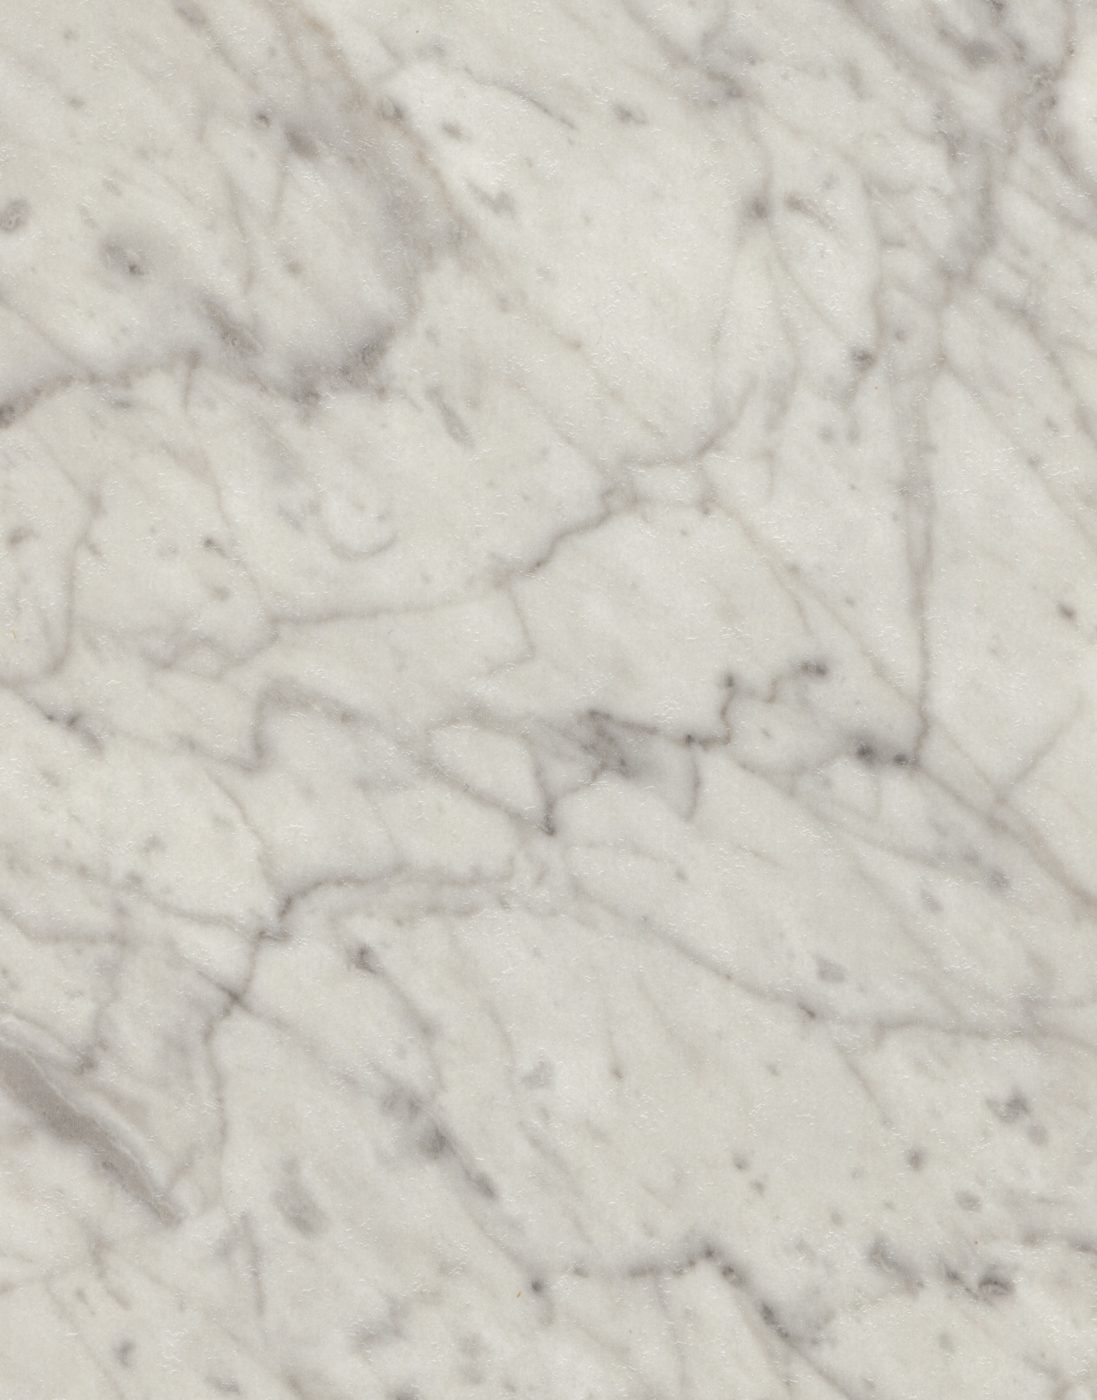 Countertops: Carrara Bianco Formica